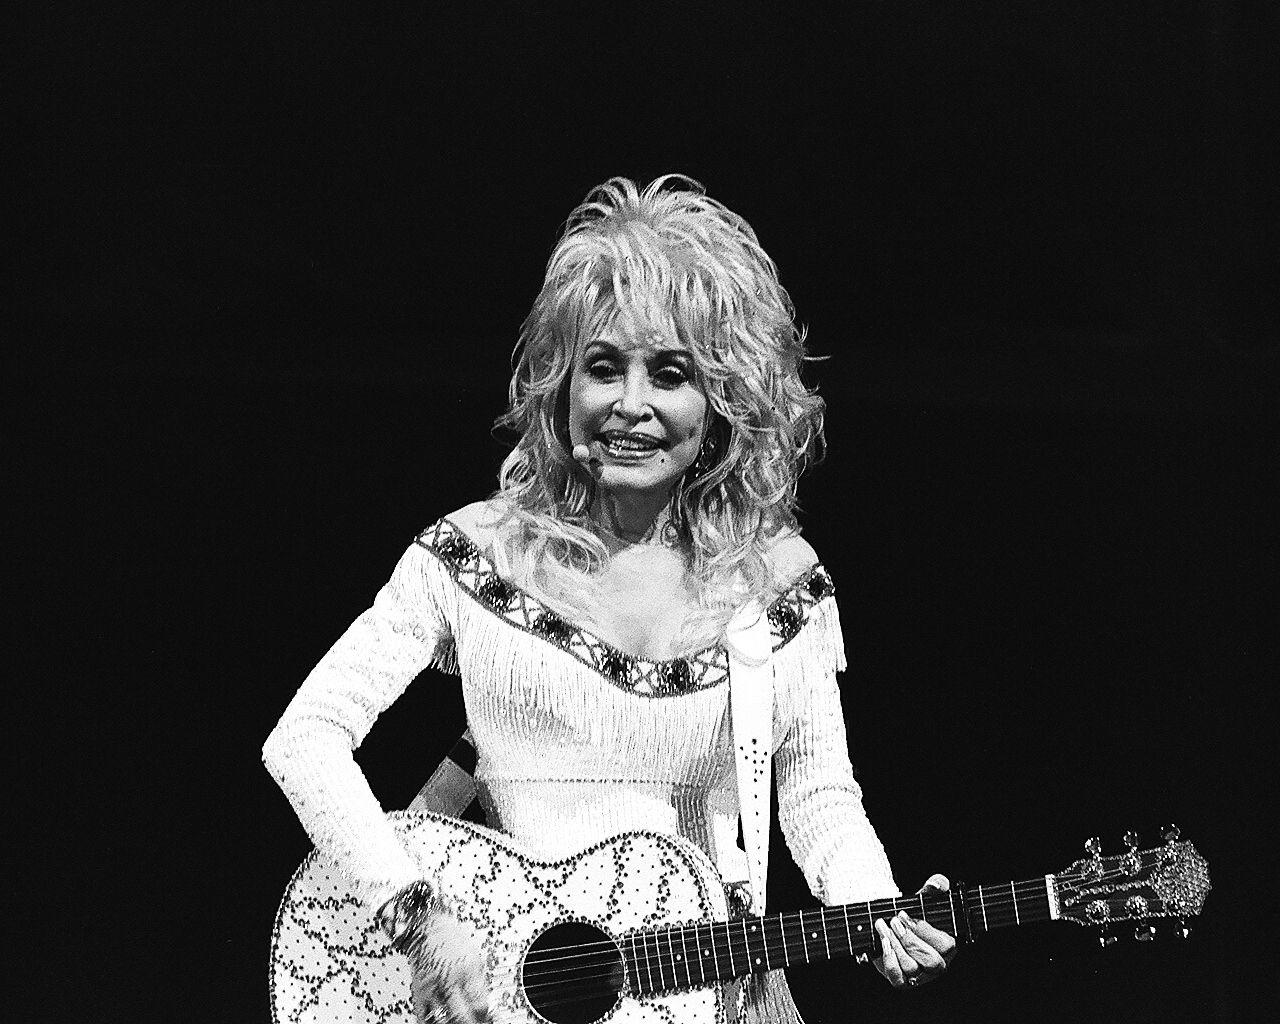 PHOTOS: Dolly Parton